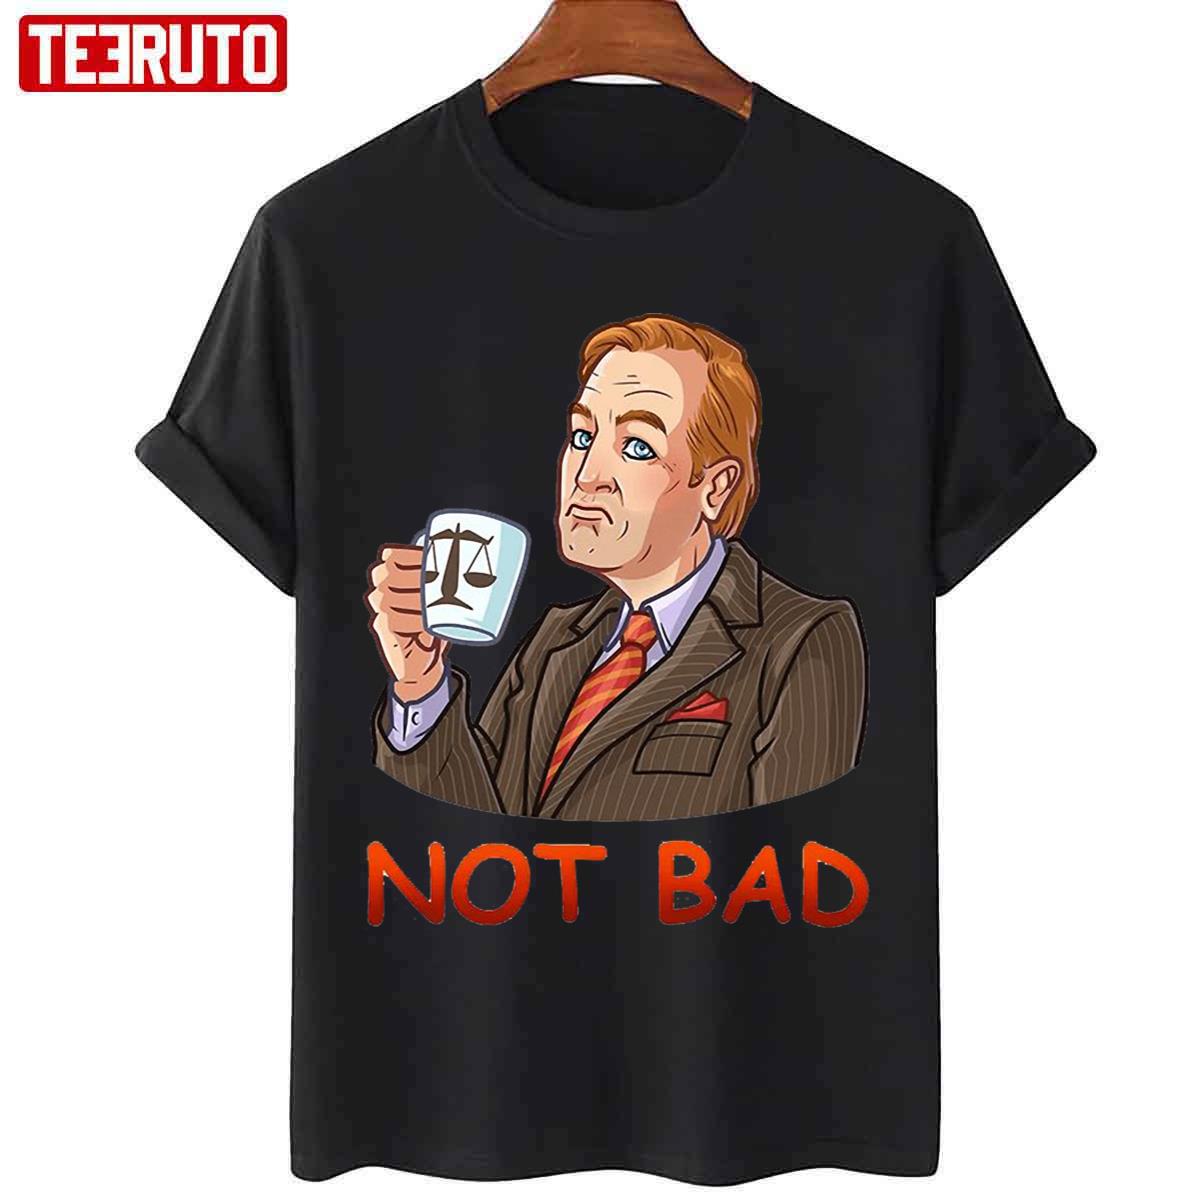 Not Bad Better Call Saul Netflix Fanart Unisex T-shirt